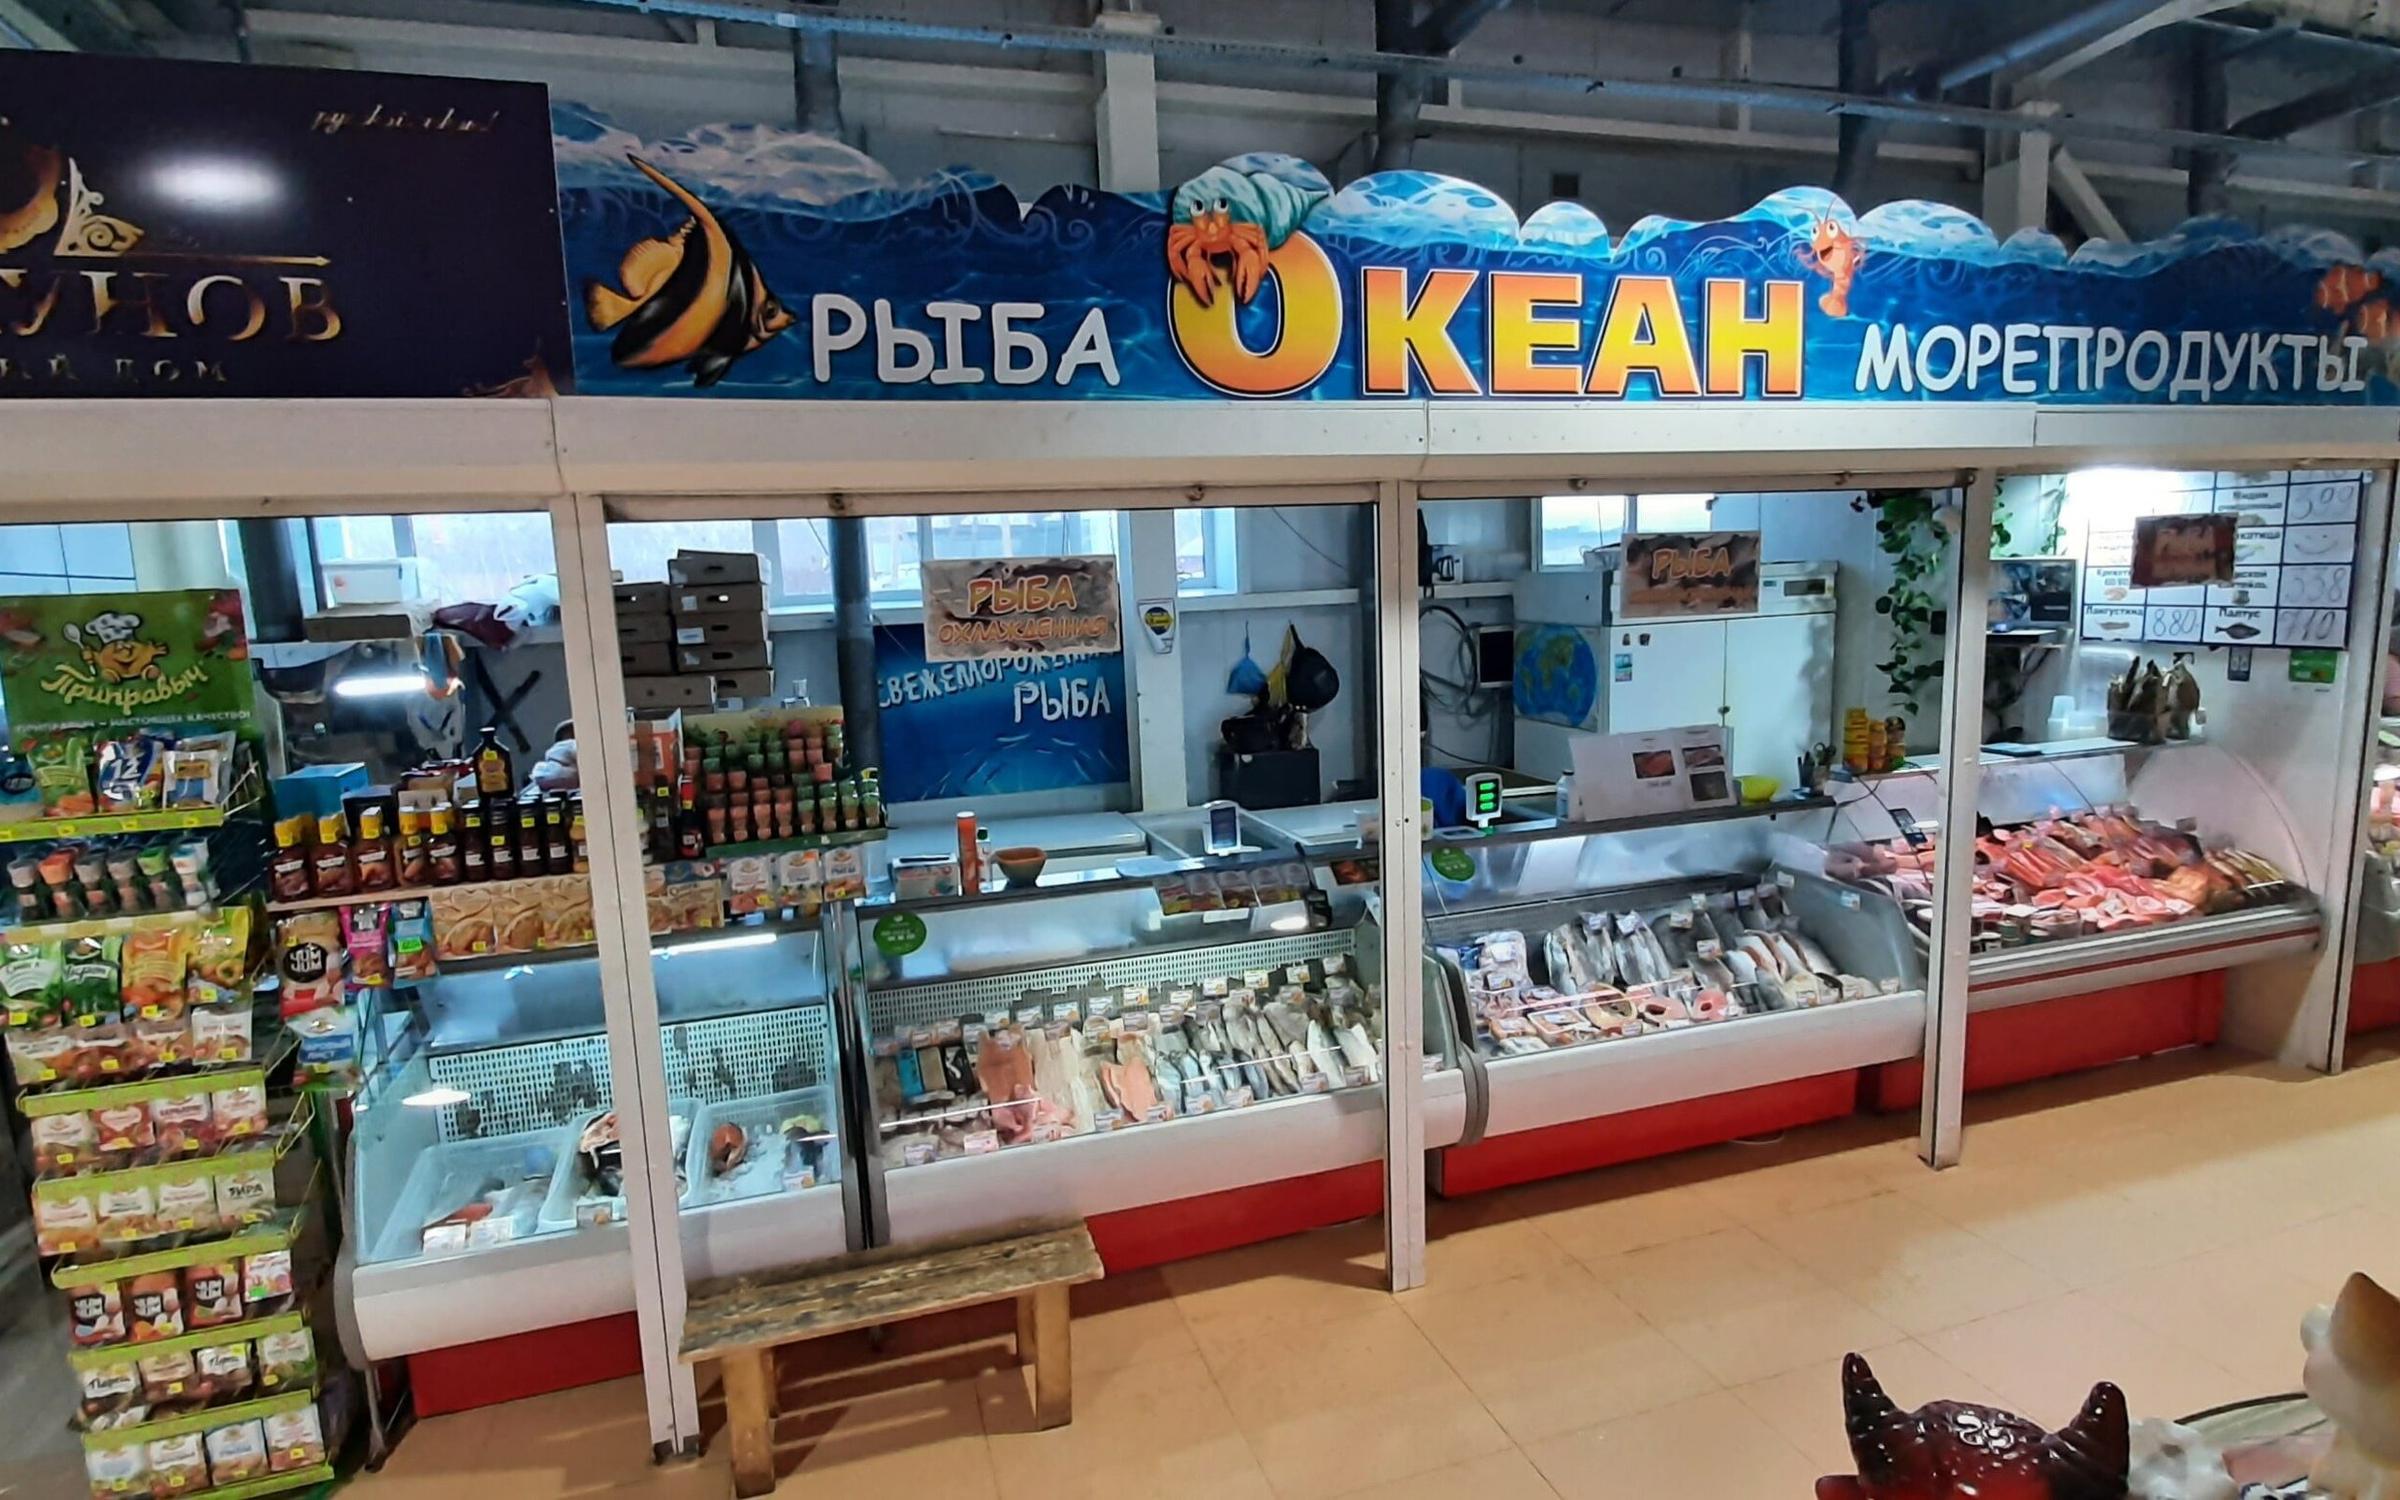 Океан магазин рыбы. Рыбный магазин. Рыбный магазин океан. Океан магазин рыбы и морепродуктов. Рыбный магазин Одинцово.